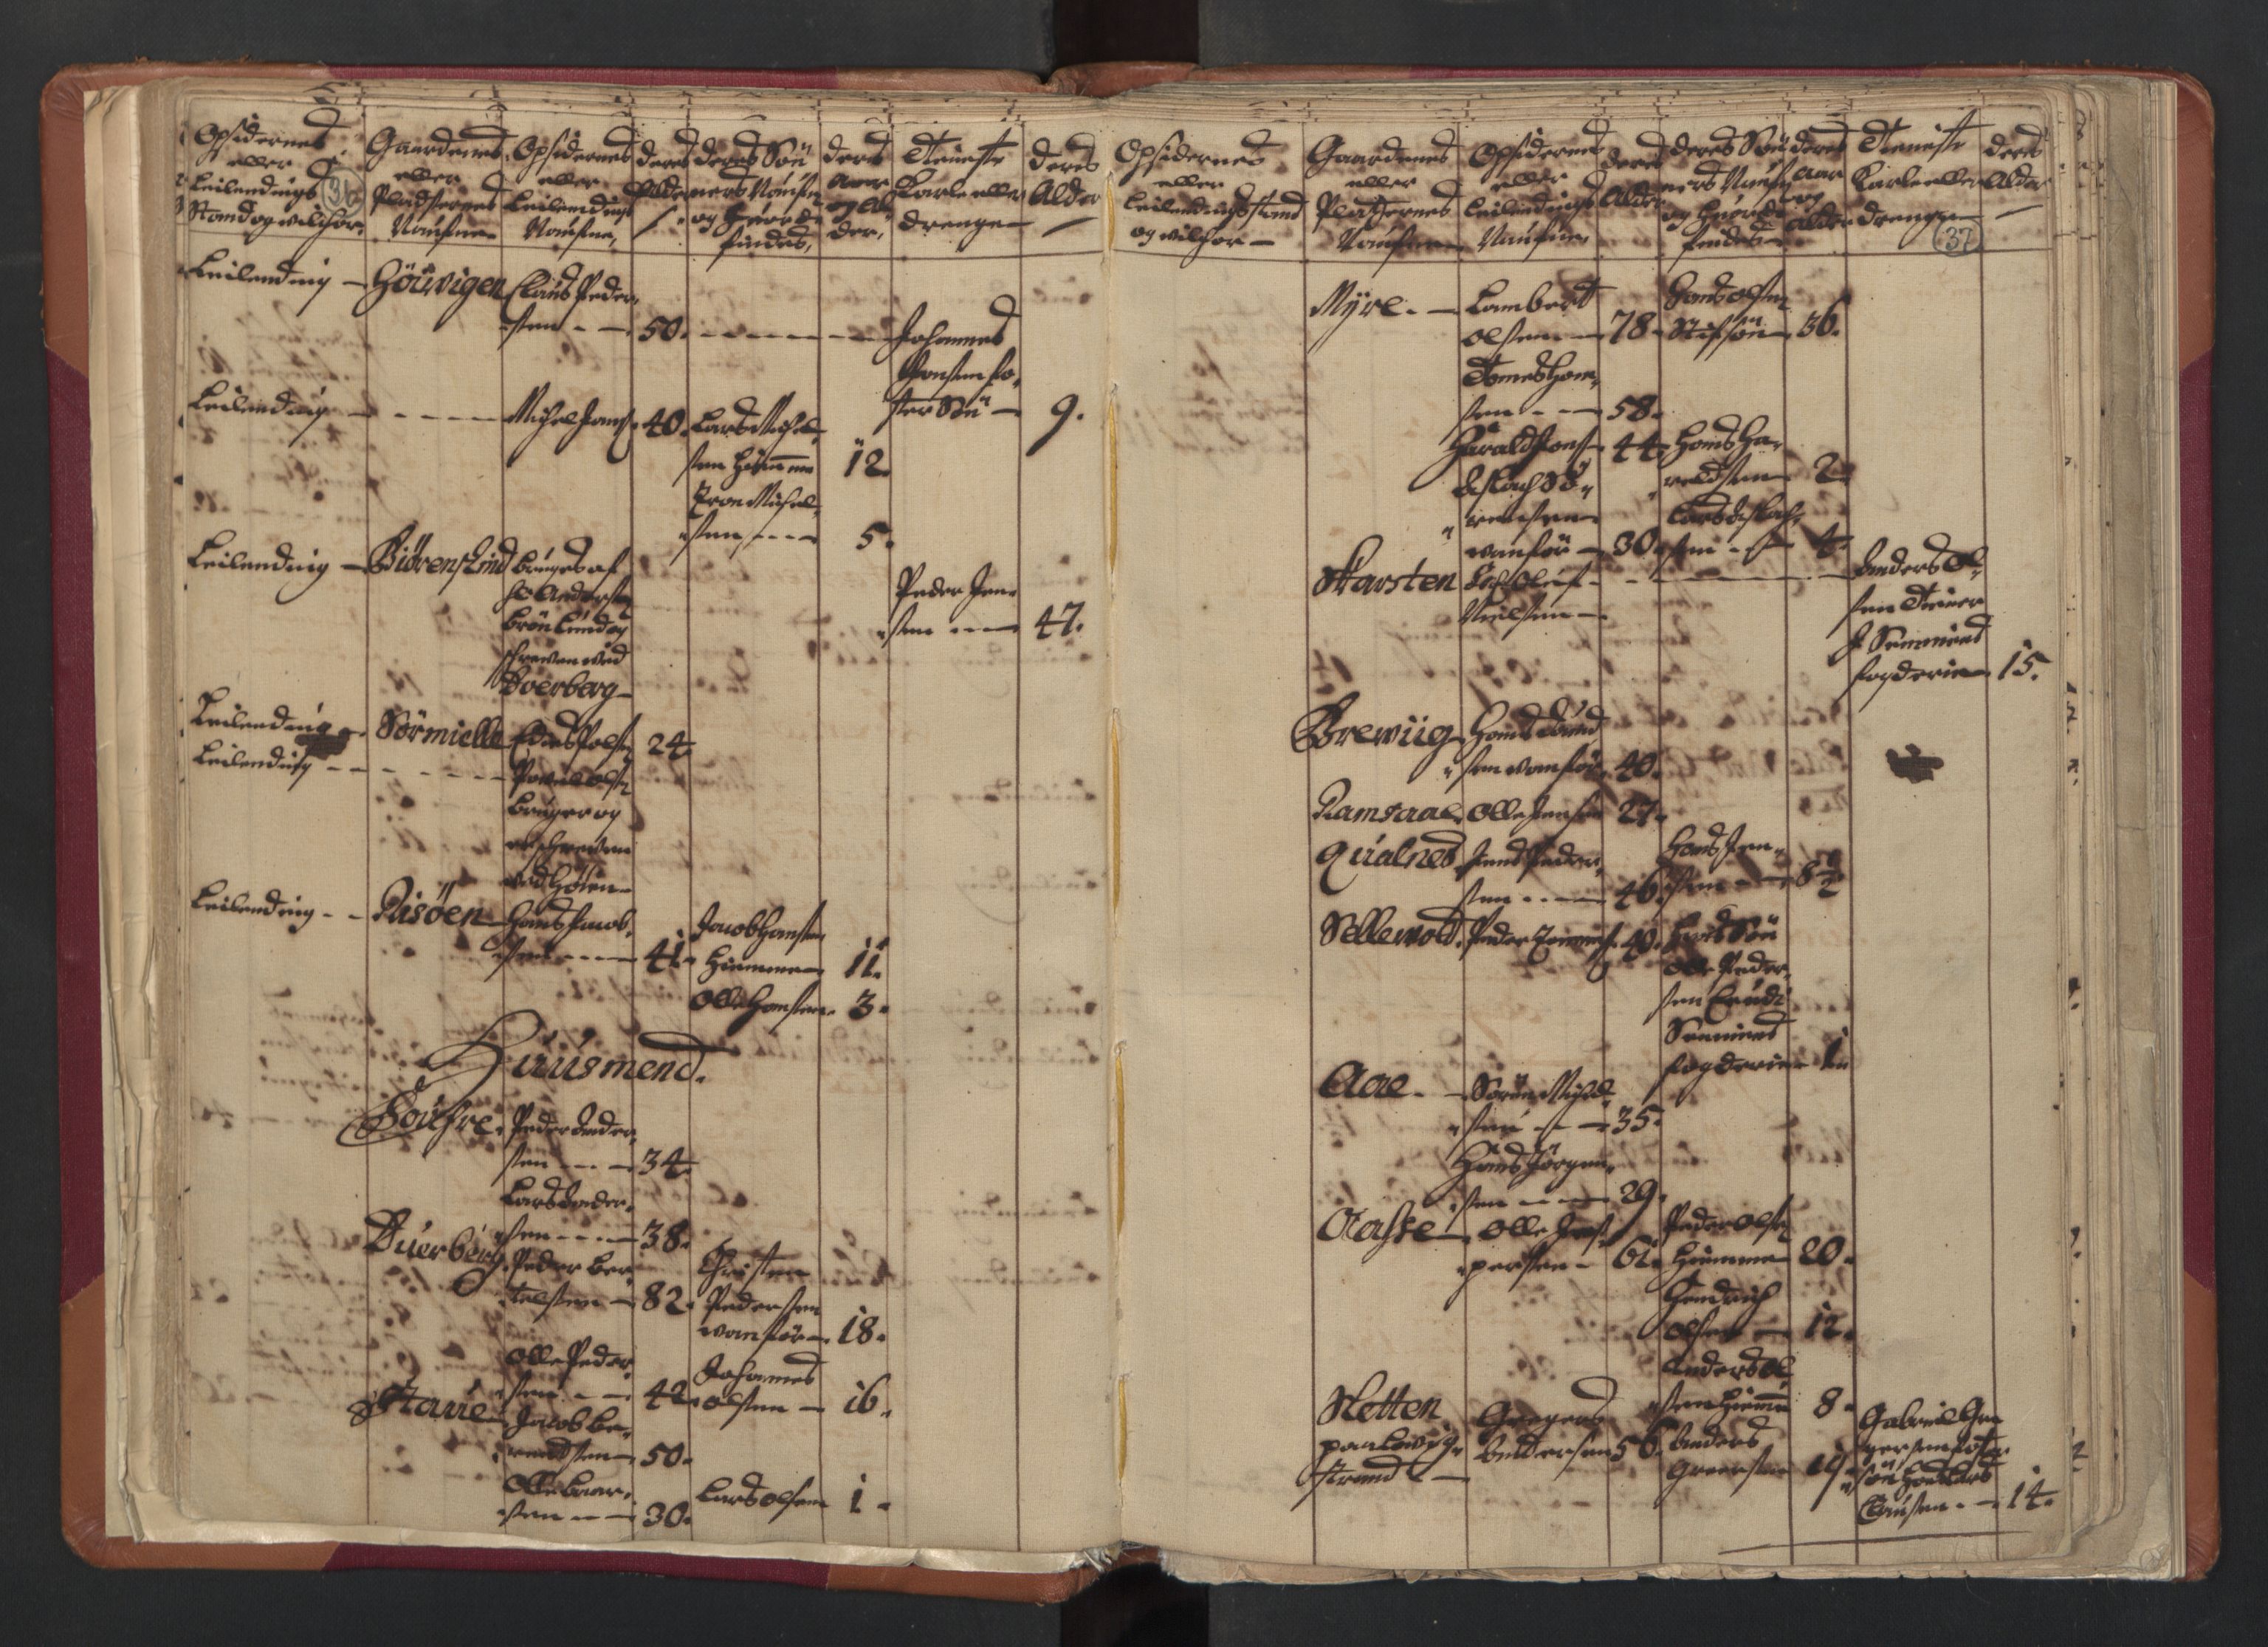 RA, Census (manntall) 1701, no. 18: Vesterålen, Andenes and Lofoten fogderi, 1701, p. 36-37